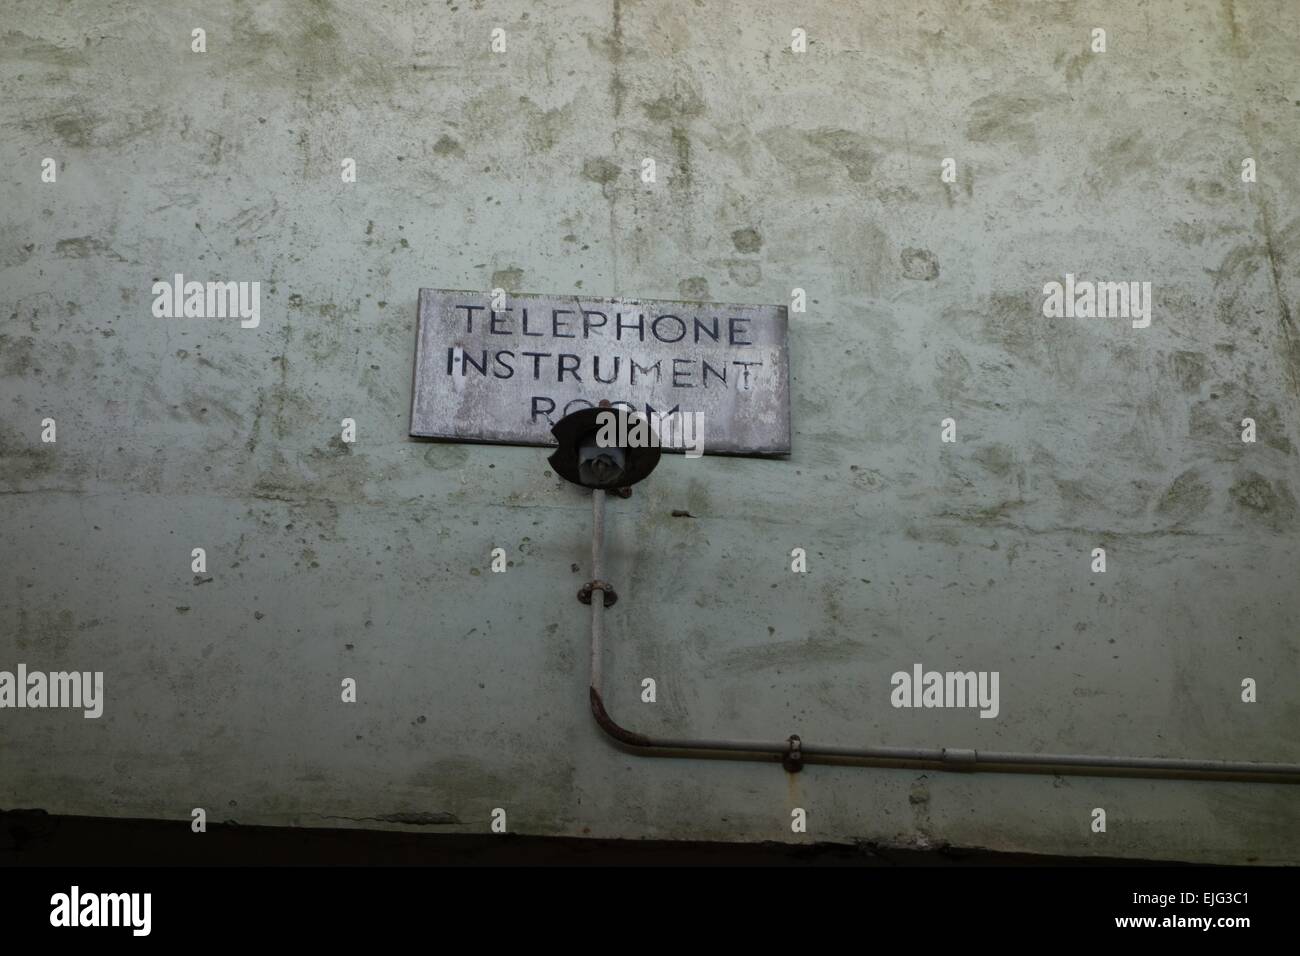 geheimnisvolle passend für Telefon Instrument Zimmer in atomare Tests darauf aufbauend Orford Ness, Suffolk UK AWRE jetzt National Trust Stockfoto